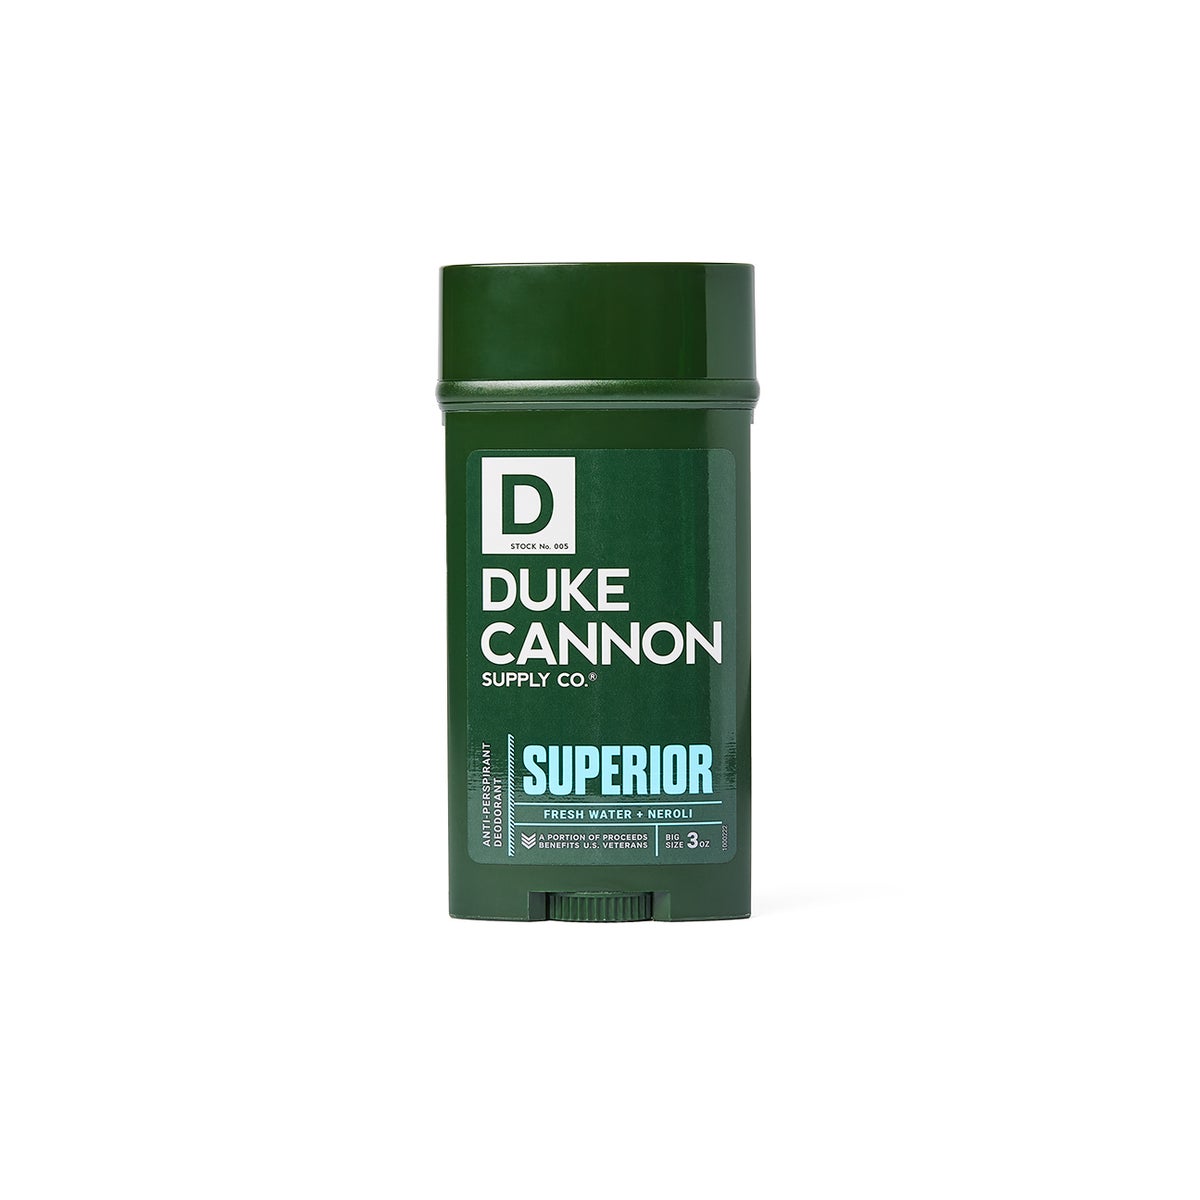 Antiperspirant Deodorant - Superior